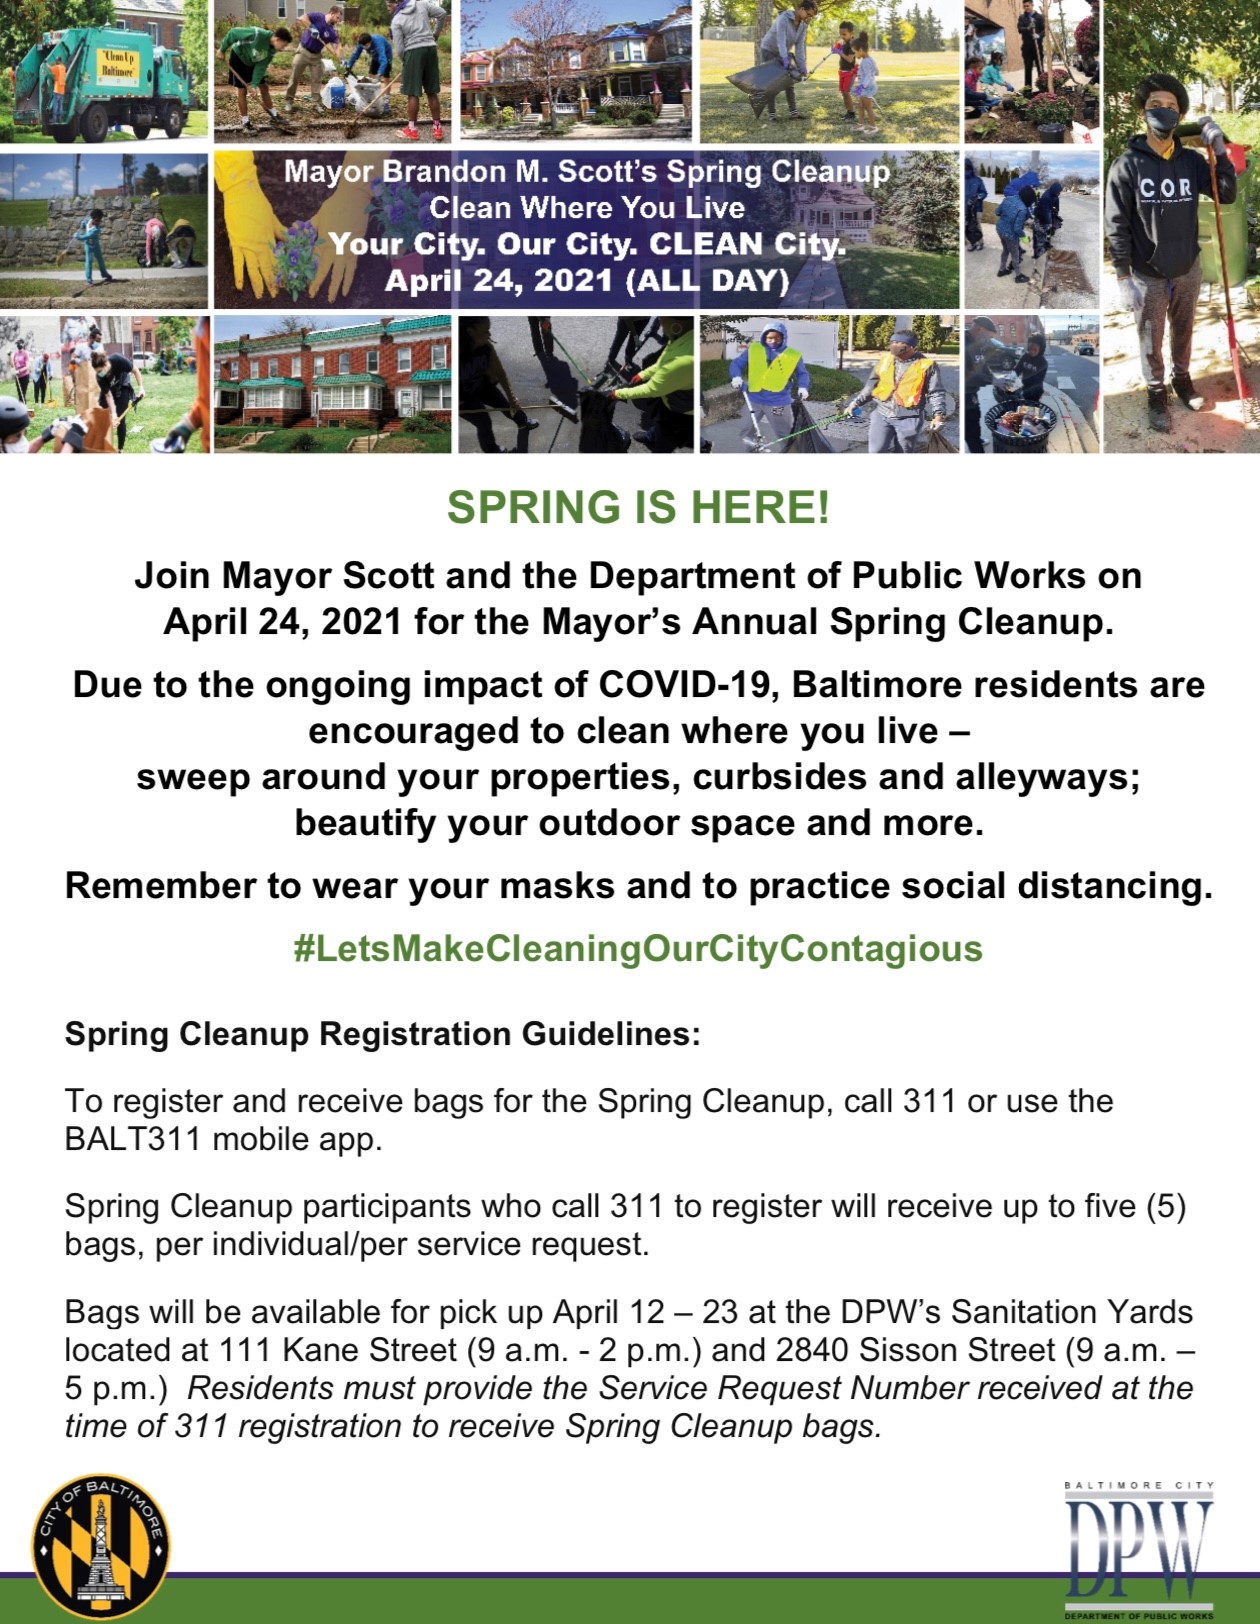 Mayor Scott's Spring Cleanup Flyer 